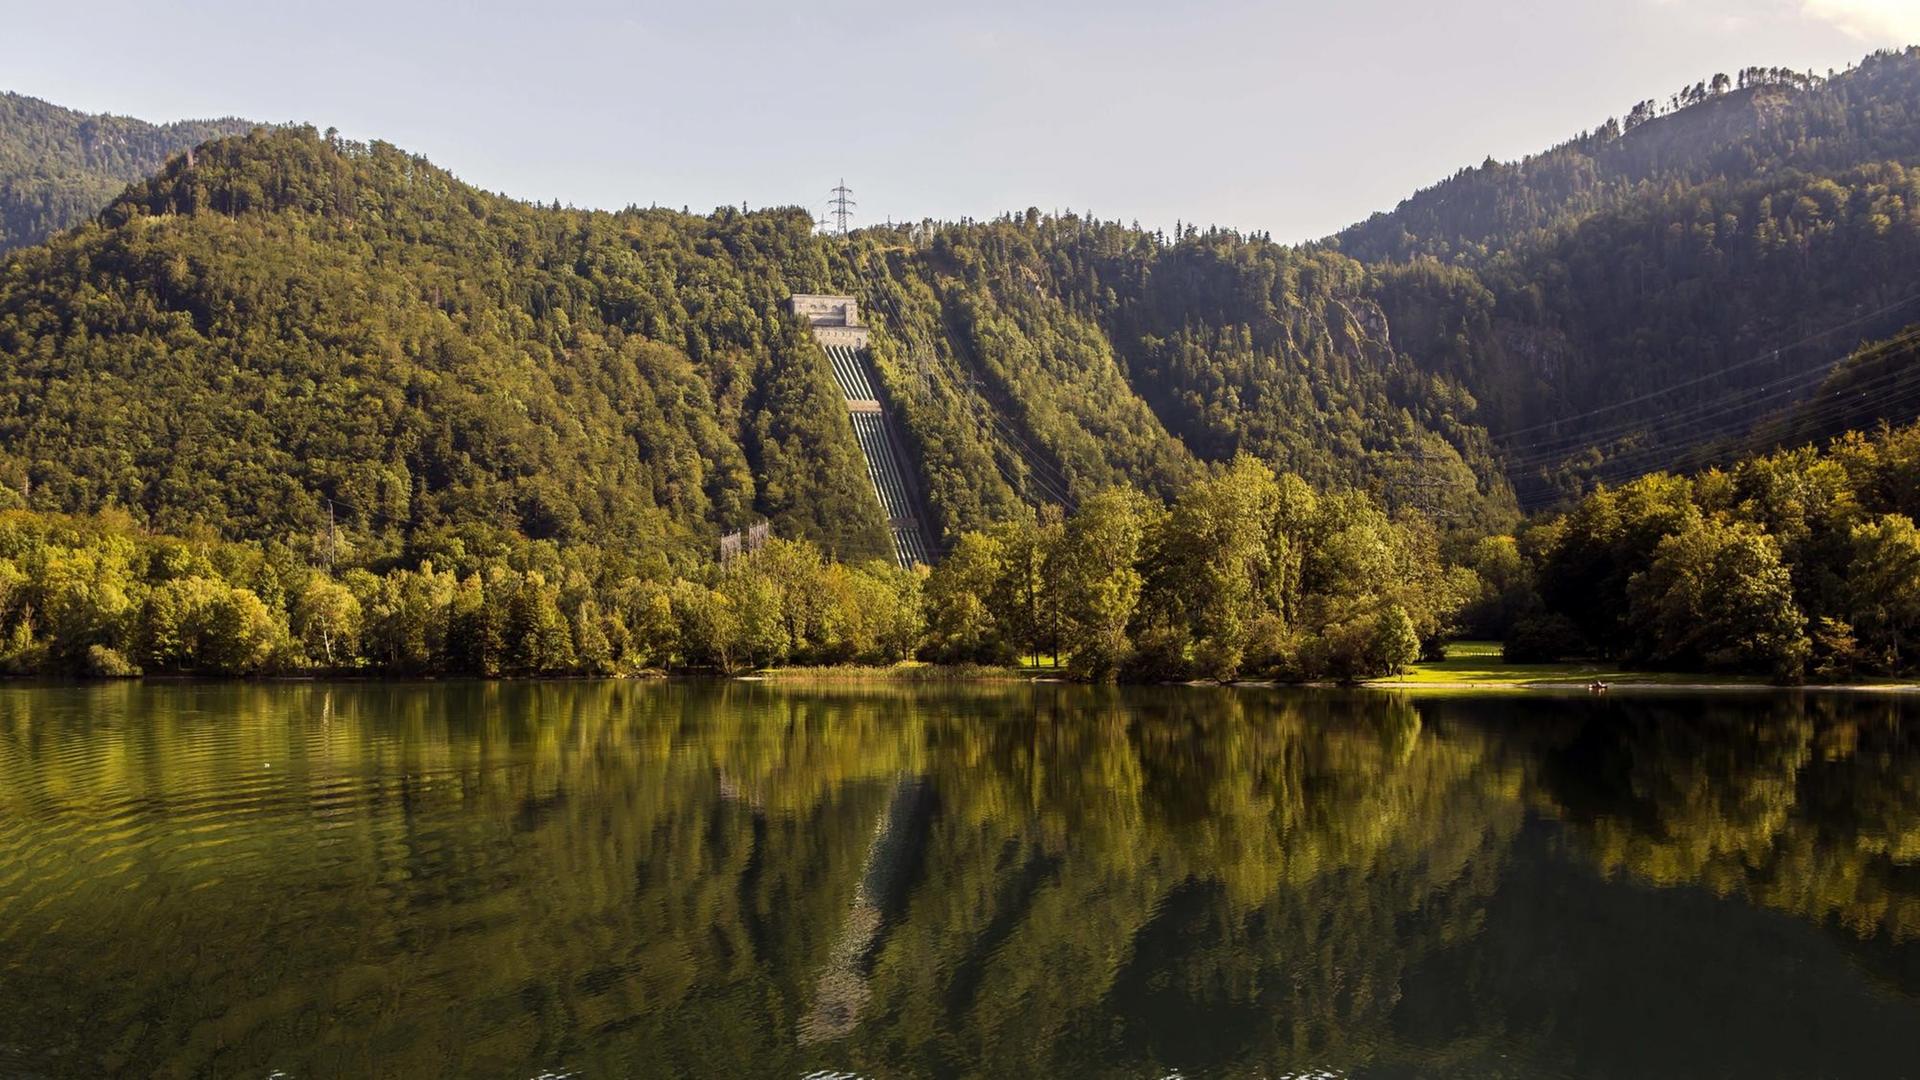 Ansicht des Walchensee-Kraftwerks direkt am See zwischen bewaldeten Hügeln gelegen.